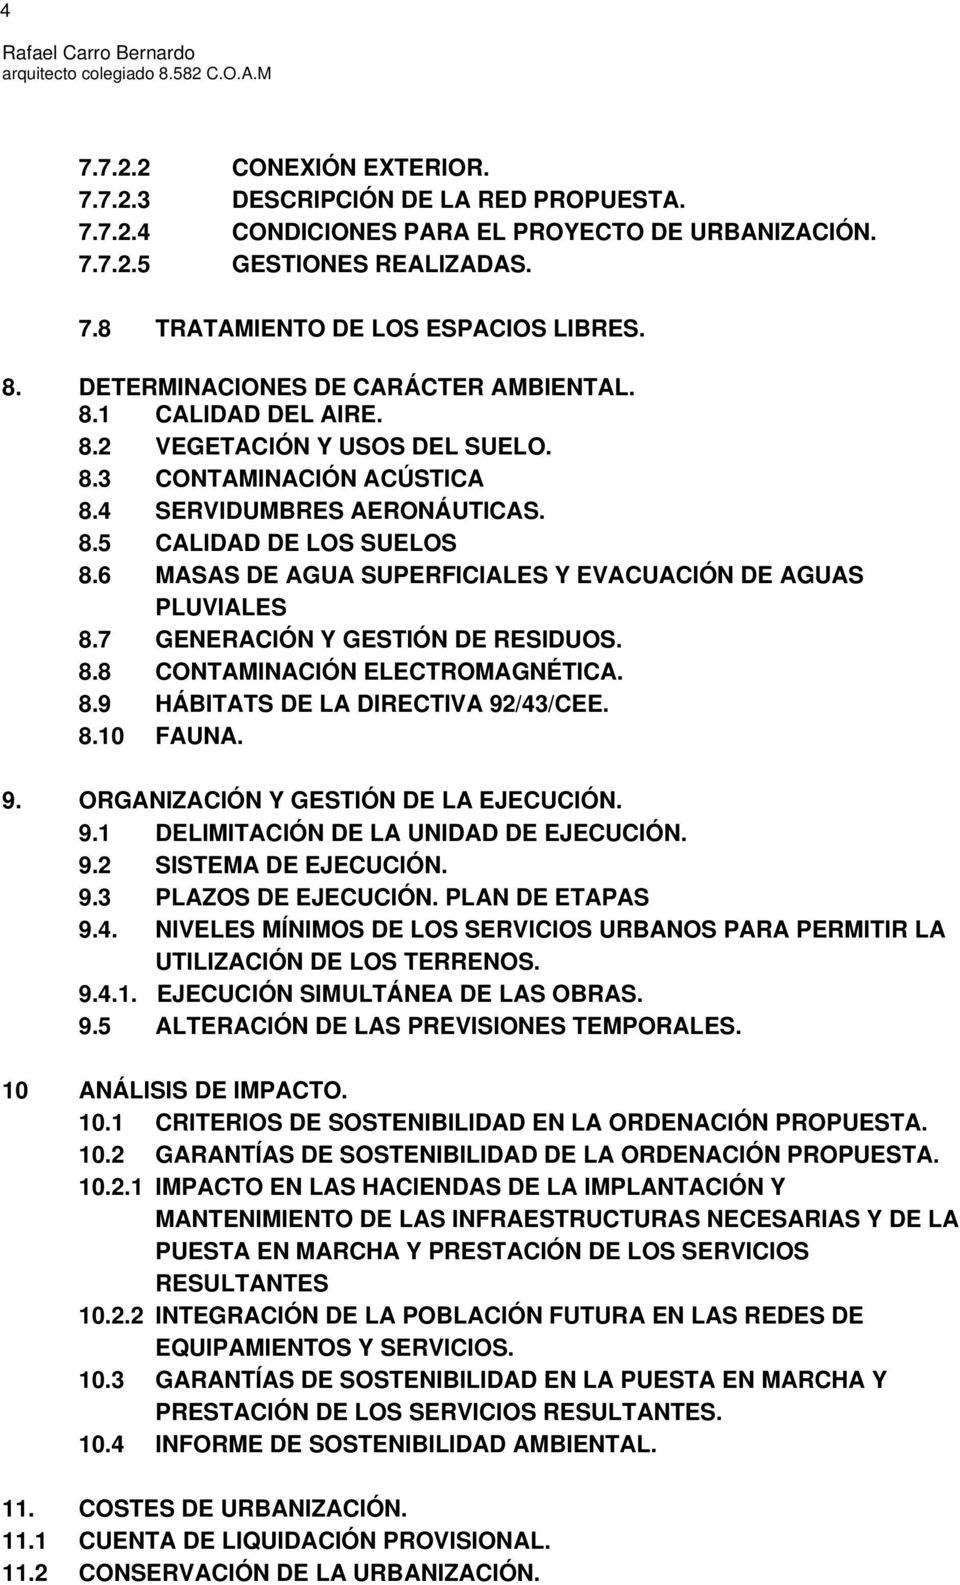 6 MASAS DE AGUA SUPERFICIALES Y EVACUACIÓN DE AGUAS PLUVIALES 8.7 GENERACIÓN Y GESTIÓN DE RESIDUOS. 8.8 CONTAMINACIÓN ELECTROMAGNÉTICA. 8.9 HÁBITATS DE LA DIRECTIVA 92